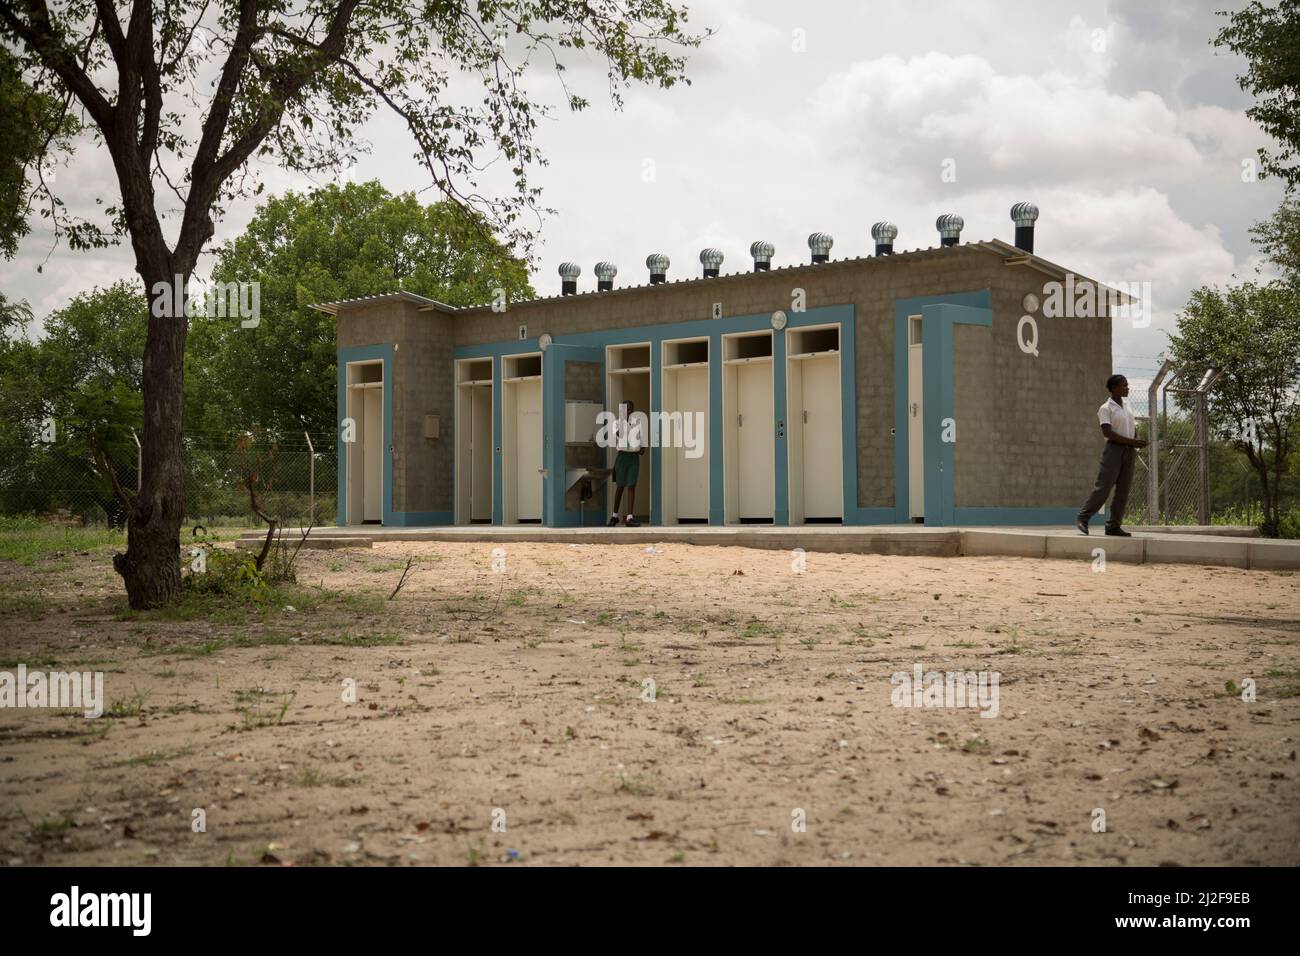 Los estudiantes utilizan los nuevos inodoros de baño - letrinas de pozo al aire libre - en una escuela primaria pública en la región de Oshana, Namibia, África meridional. Foto de stock